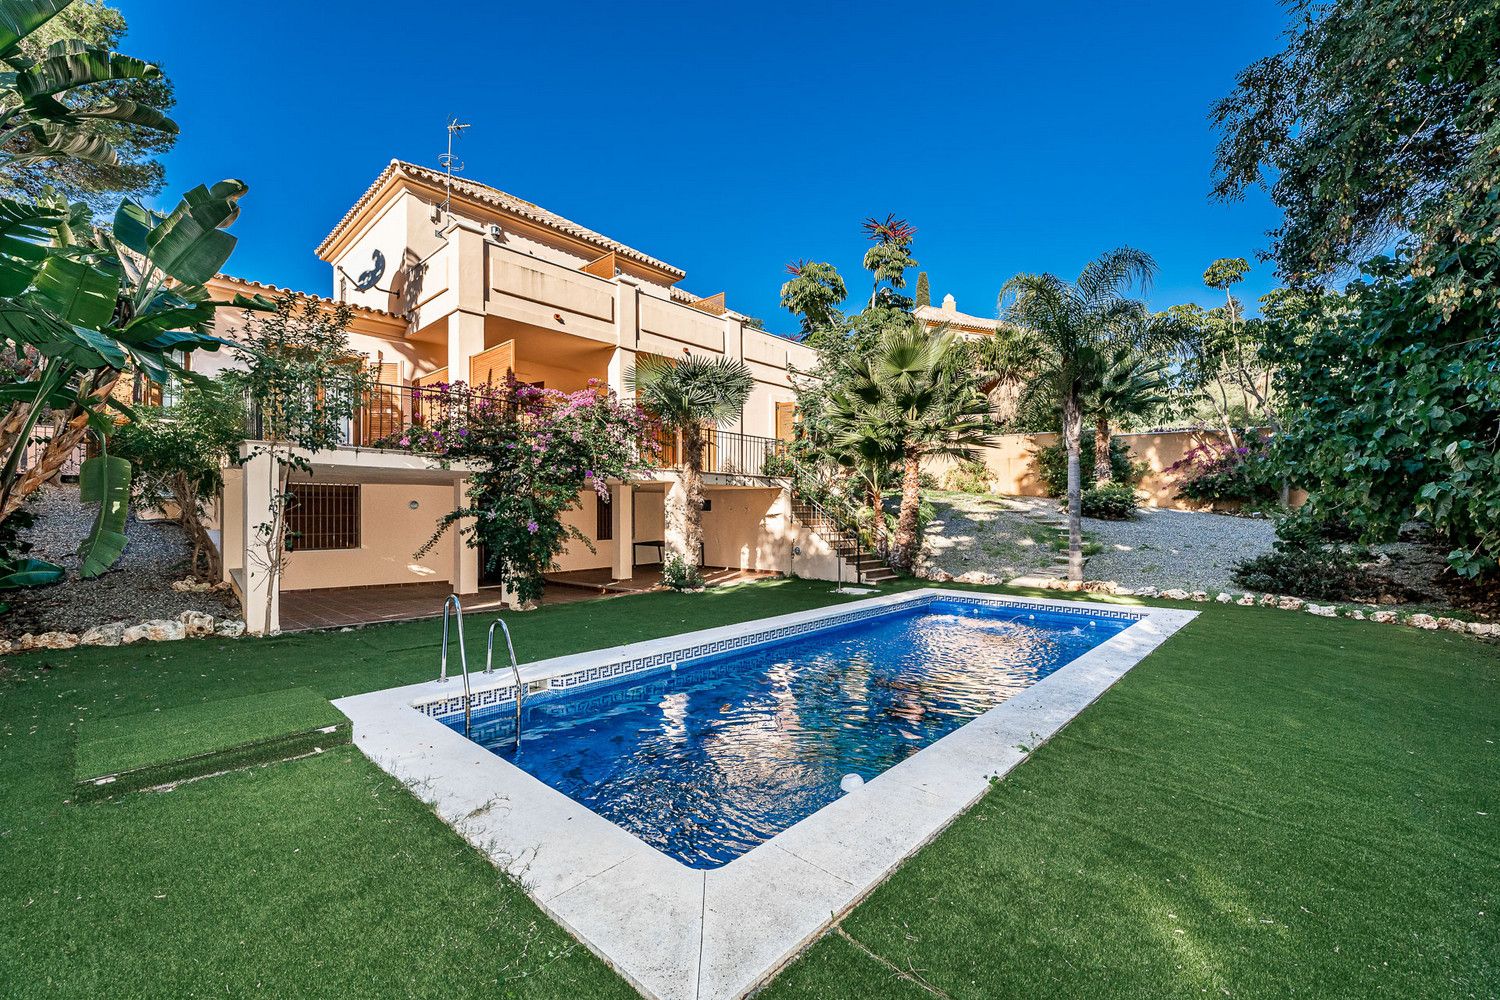 Villa de estilo tradicional, Las Lomas de Marbella | Engel & Völkers Marbella